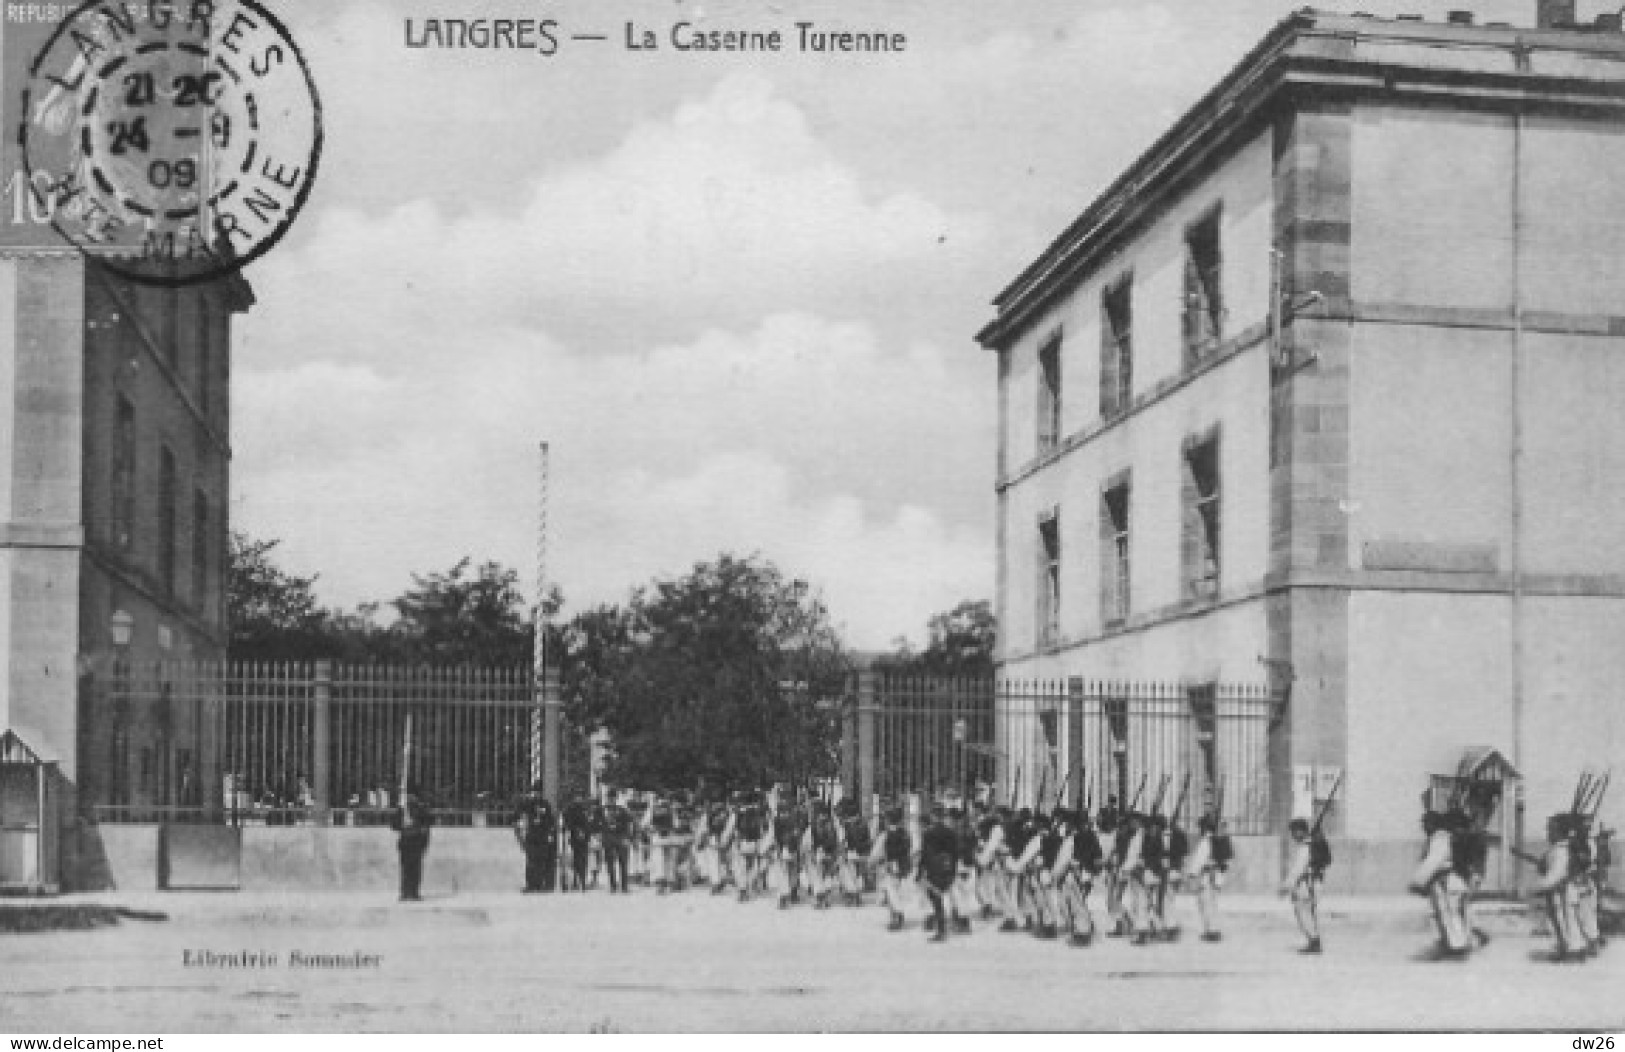 Langres (Haute Marne) La Caserne Turenne - Entrée Des Militaires De L'Infanterie 1909 - Edition Librairie Sommier - Barracks